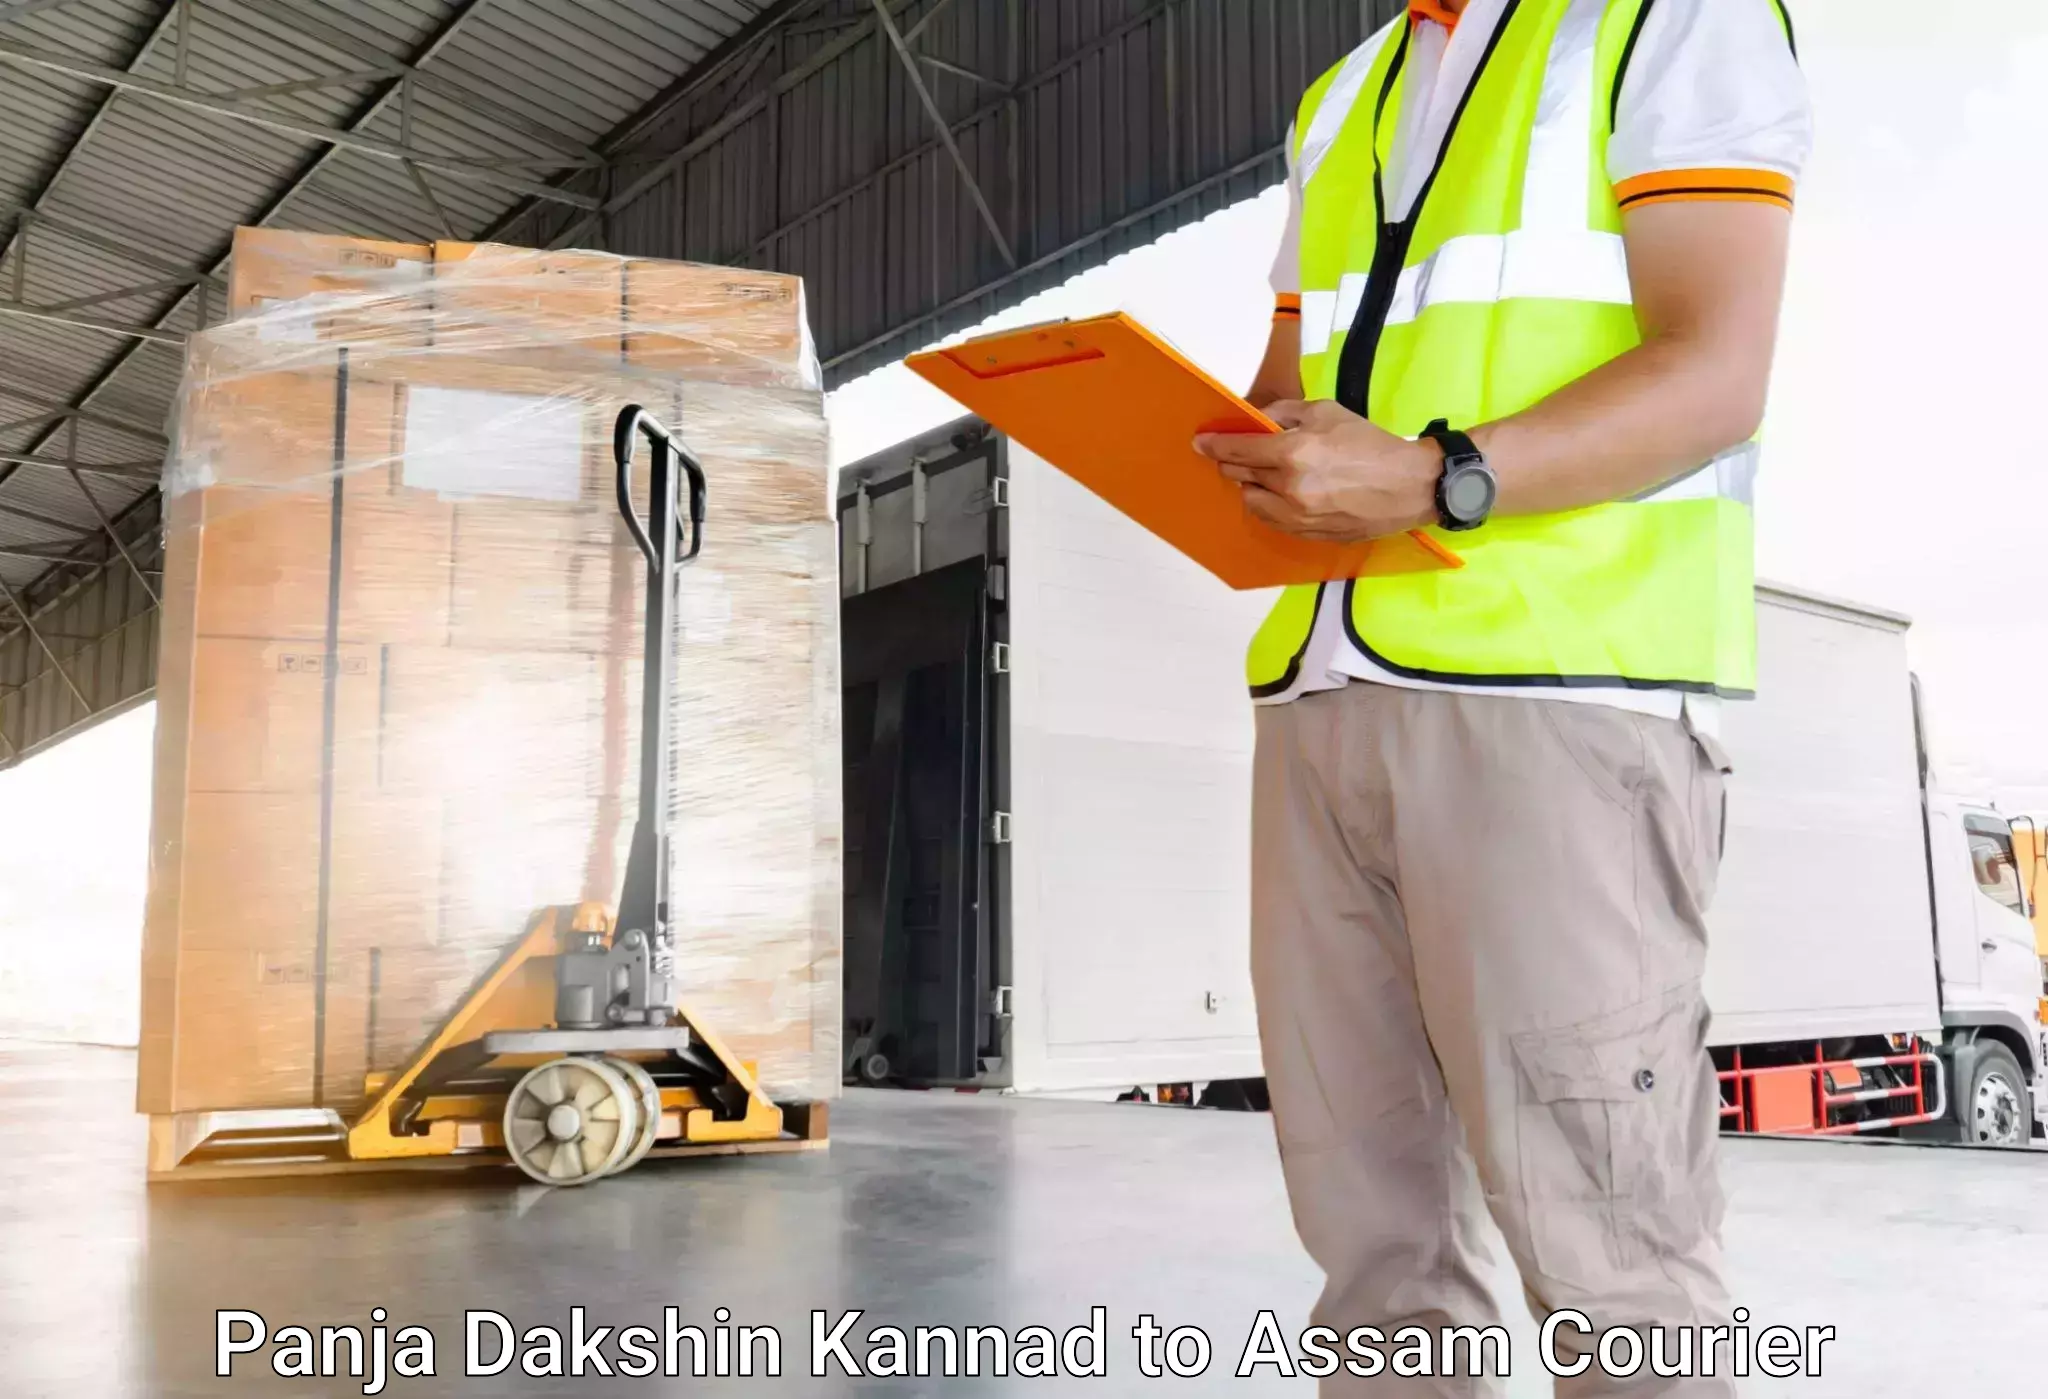 Single item baggage courier Panja Dakshin Kannad to Amoni